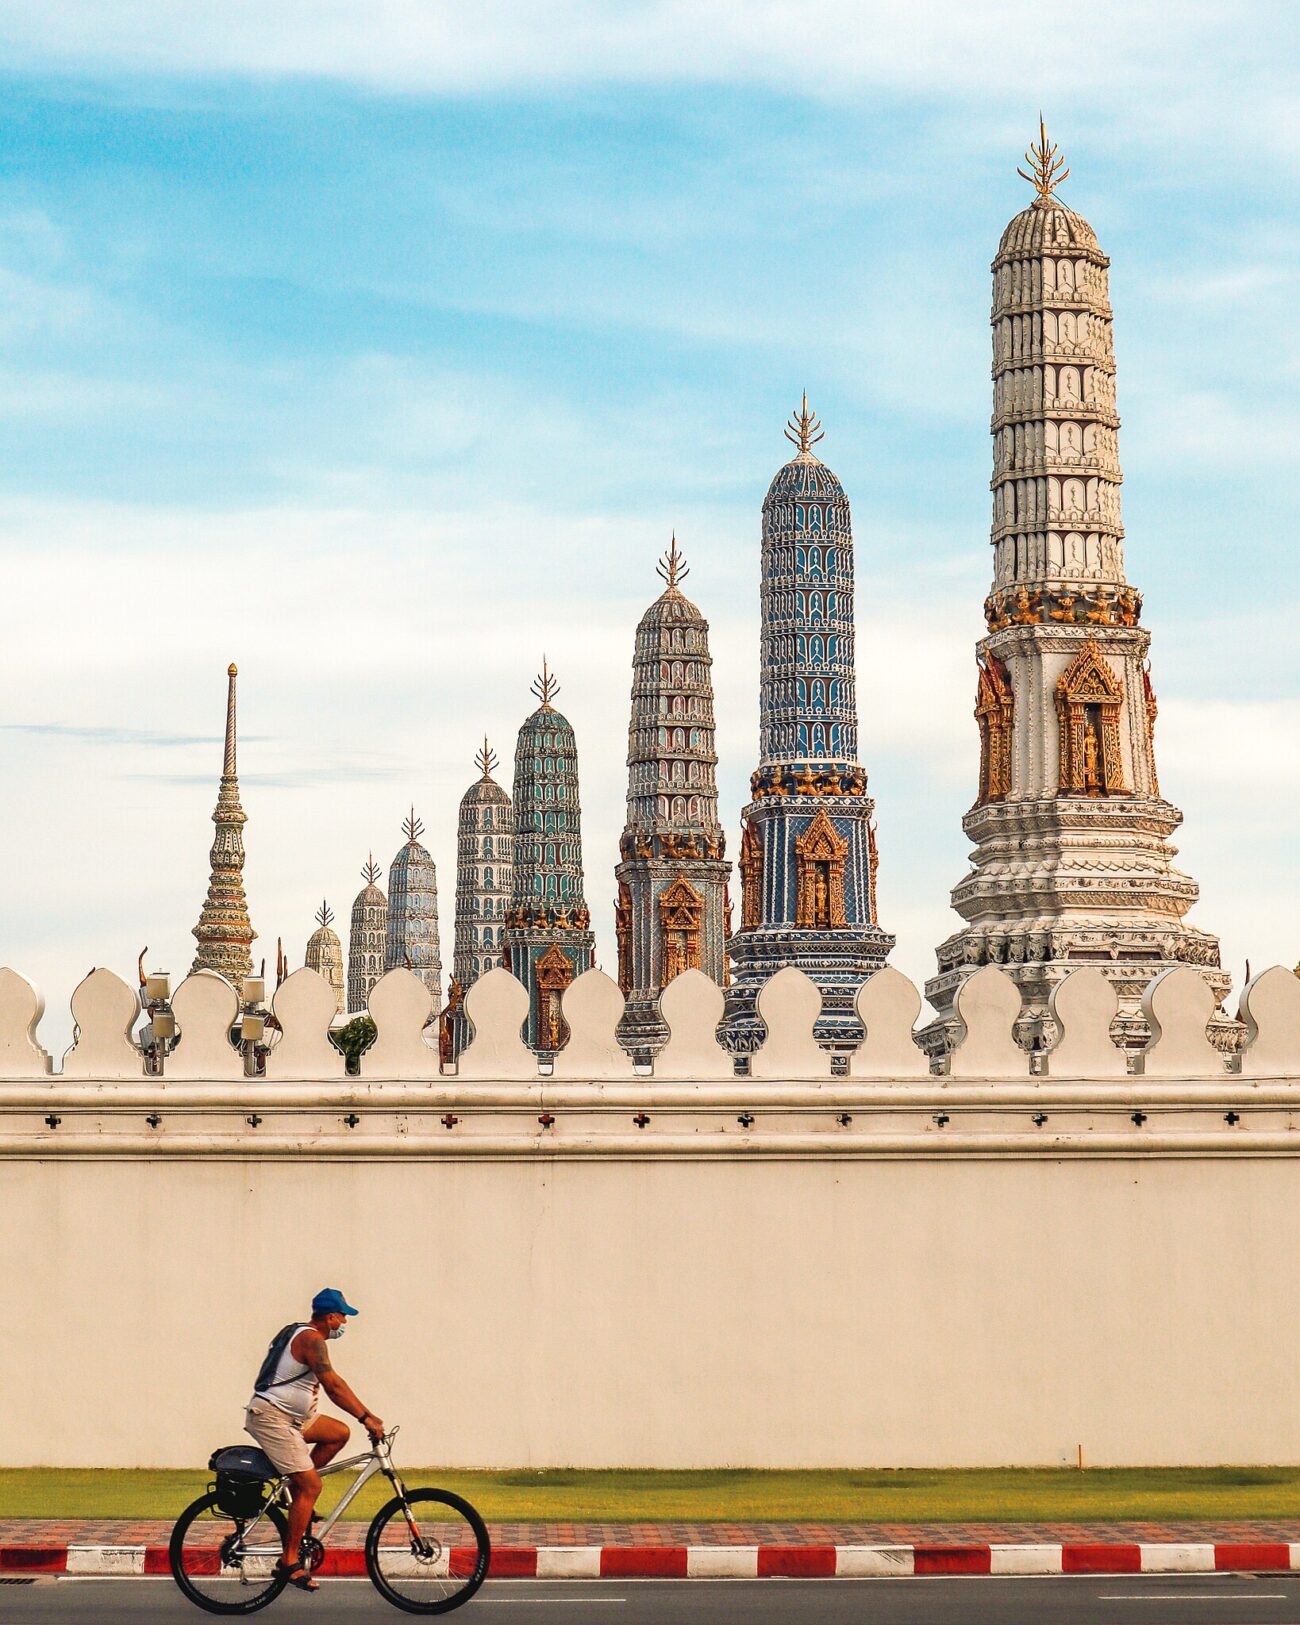 A man cycling outside the wall of the Grand Palace, Bangkok – Thailand by Kriengsak Jirasirirojanakorn, CC BY-SA 4.0
